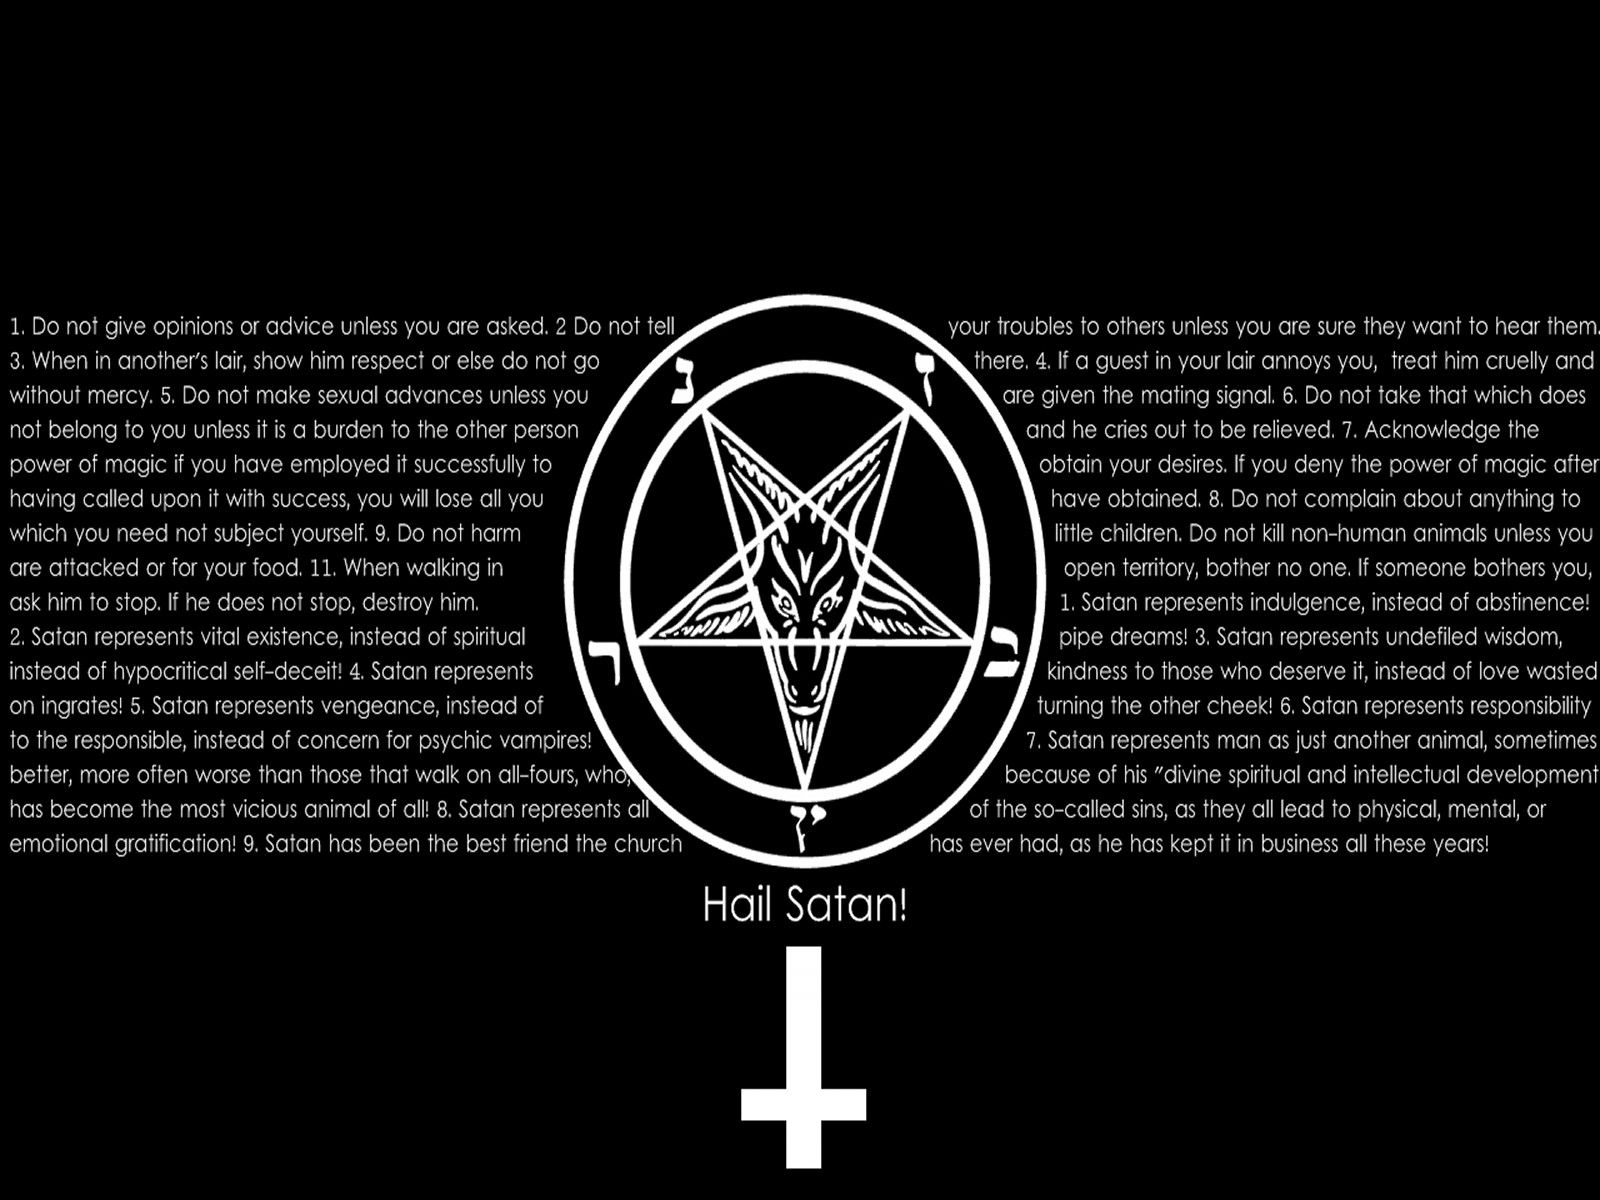 Dark Horror Occult Satan Penta Cross Religion Wallpaper